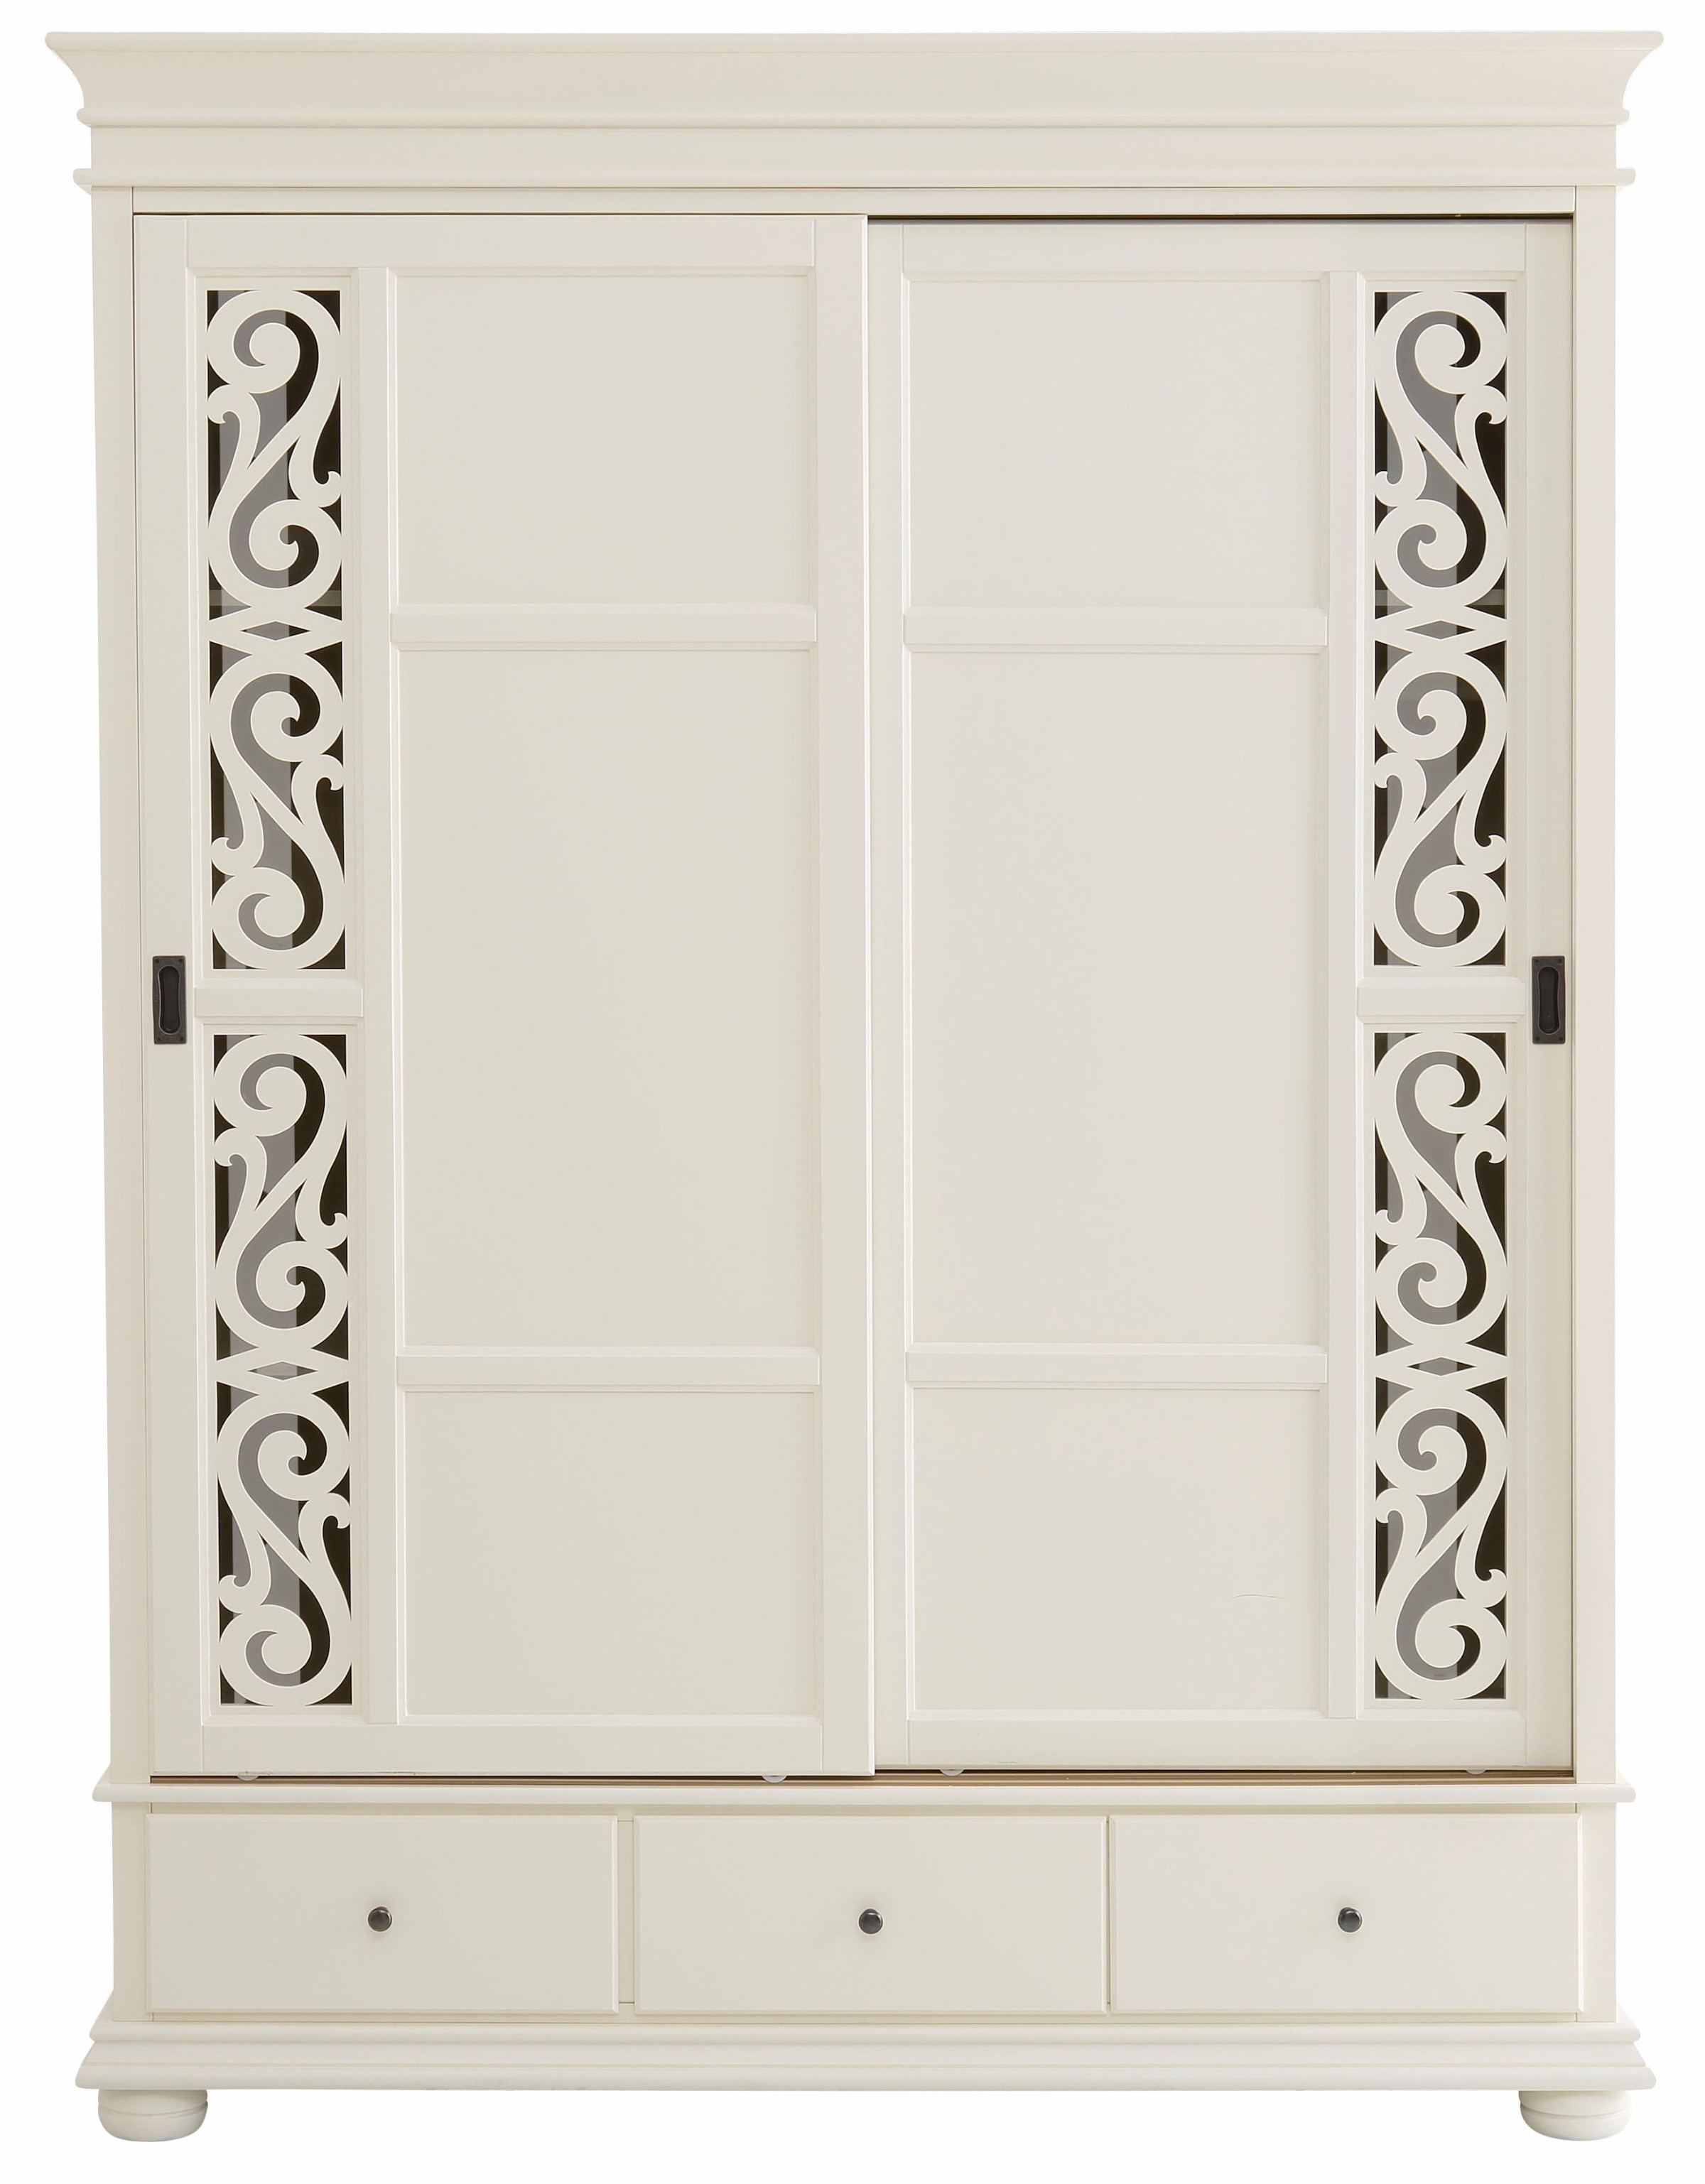 Home affaire Schiebetürenschrank »Arabeske«, mit dekorativen Fräsungen auf den Türfronten, 2-trg, Breite 160 cm